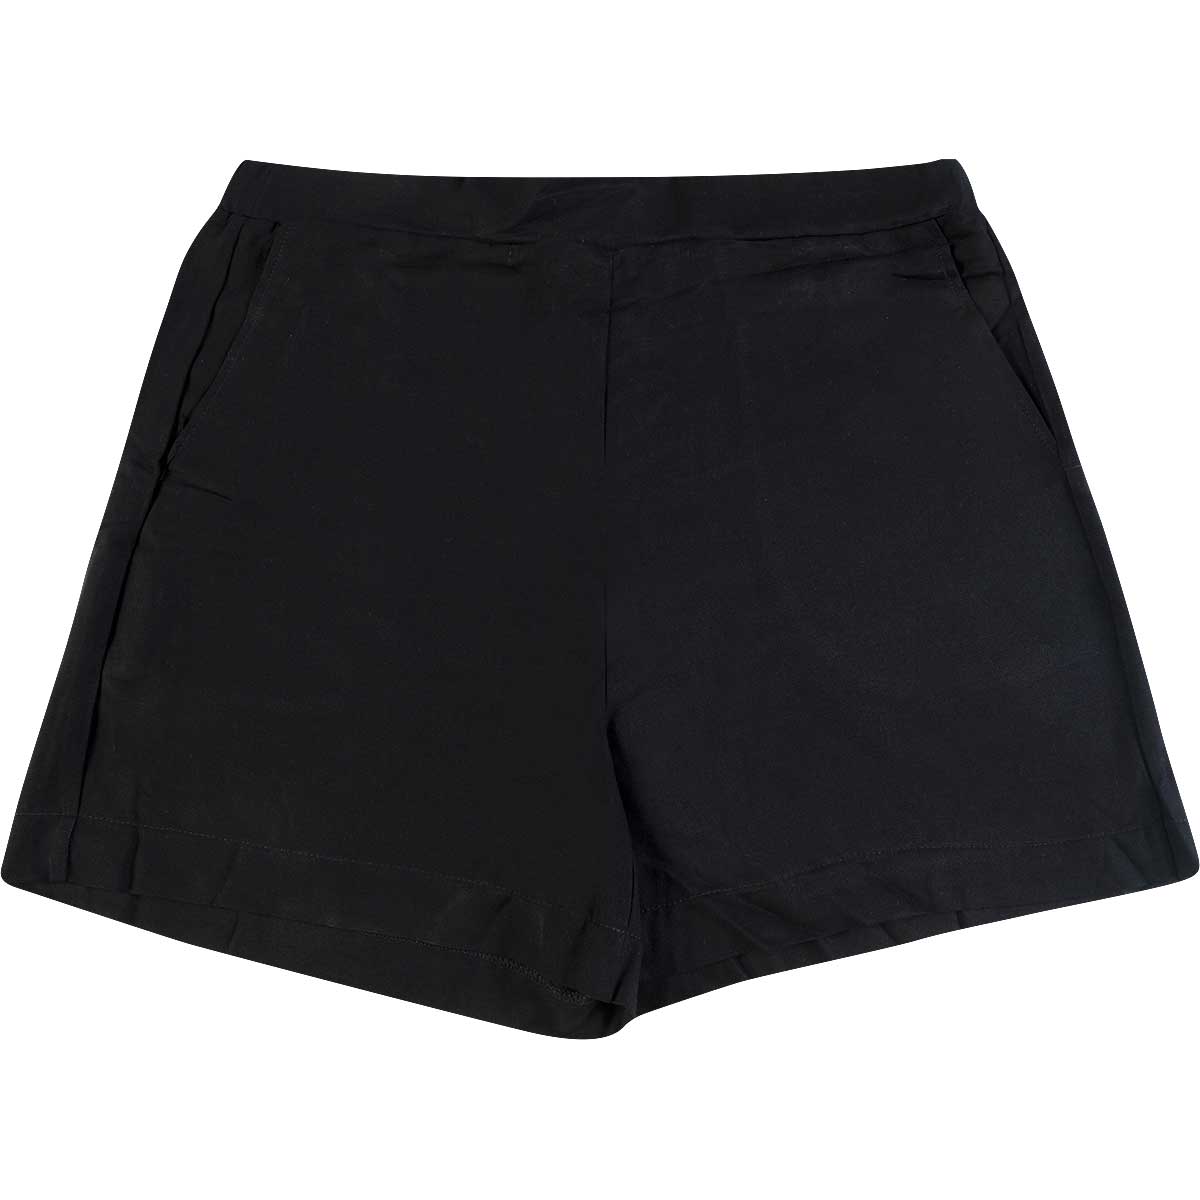 shorts-feminino-de-viscose-twill-hering-folha-preto-g-1.jpg